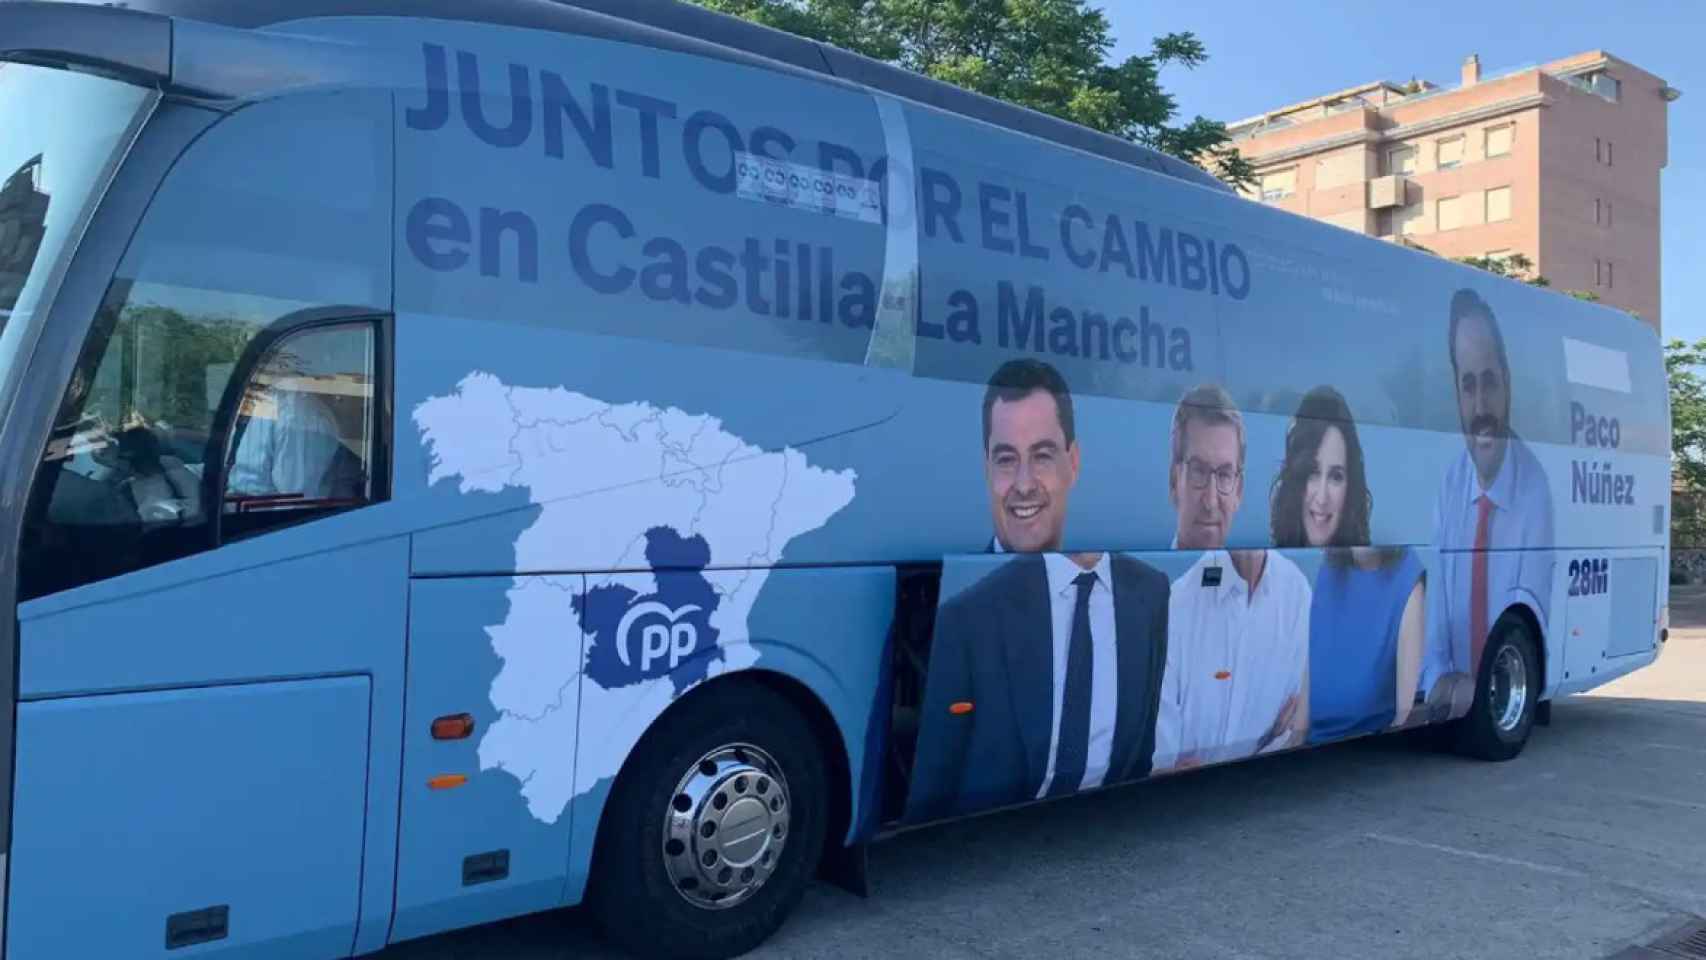 Autobús de campaña del PP en Castilla-La Mancha.